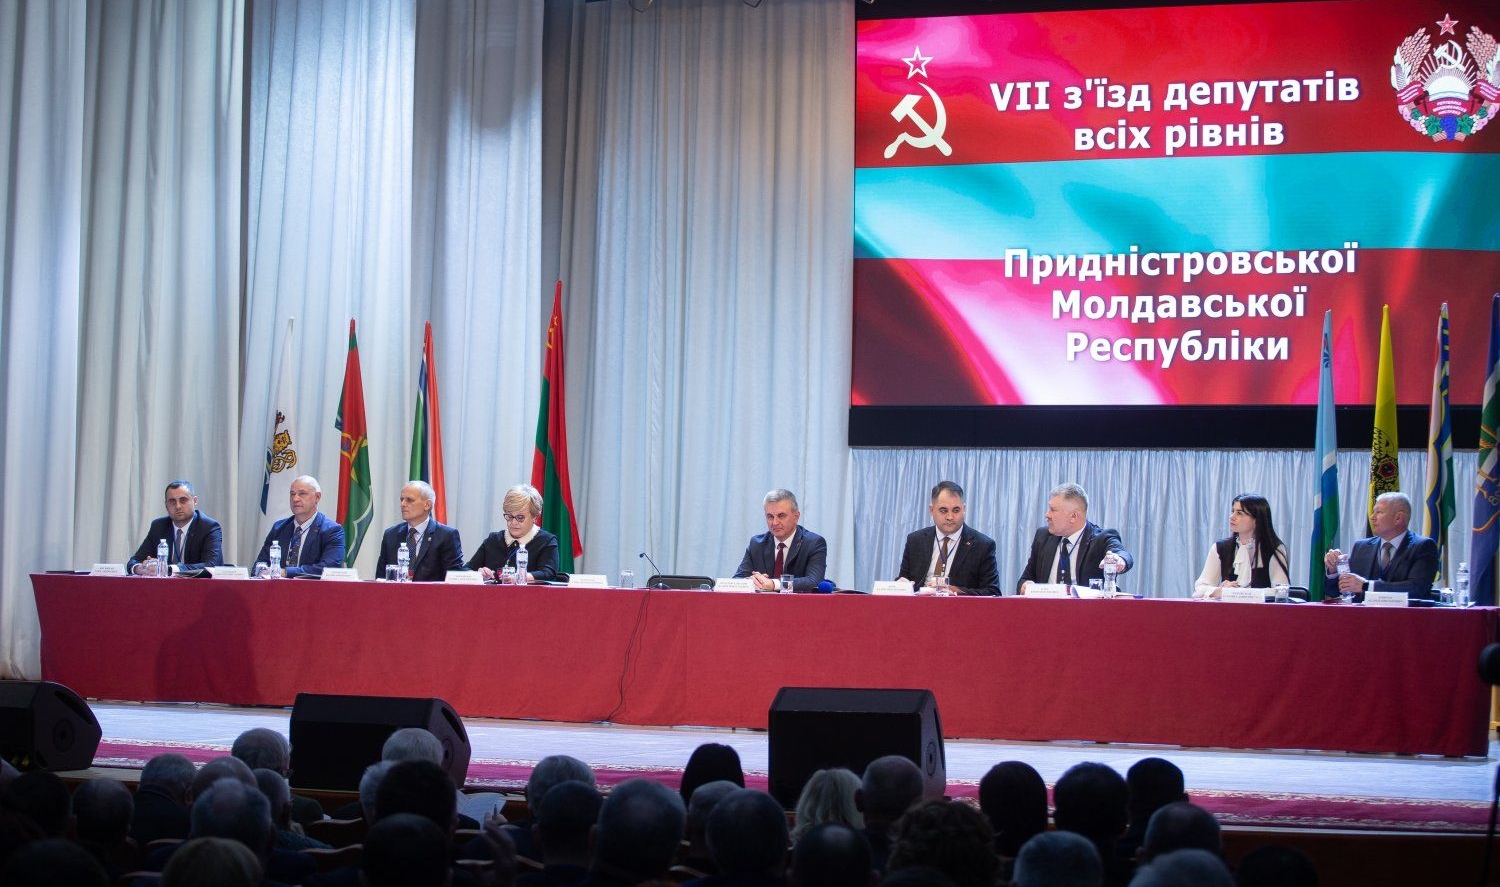 VII Съезда депутатов всех уровней Приднестровской Молдавской Республики